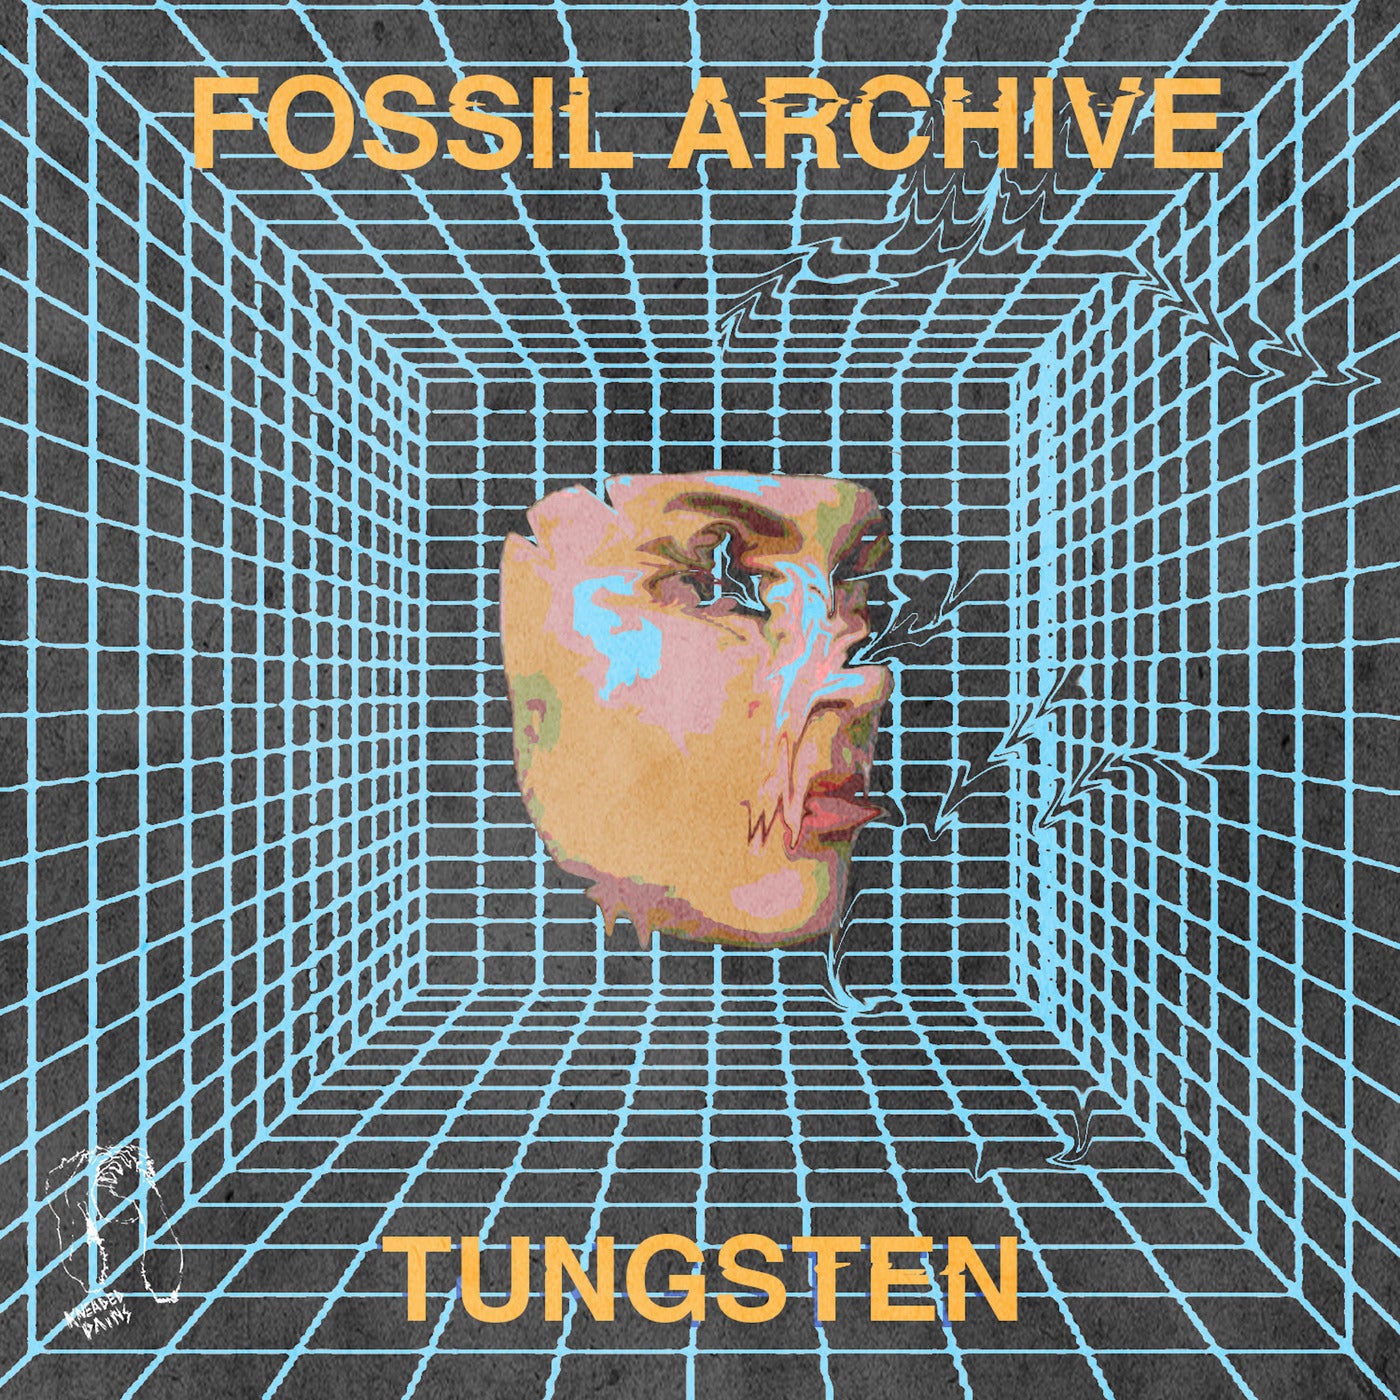 Fossil Archive – Tungsten